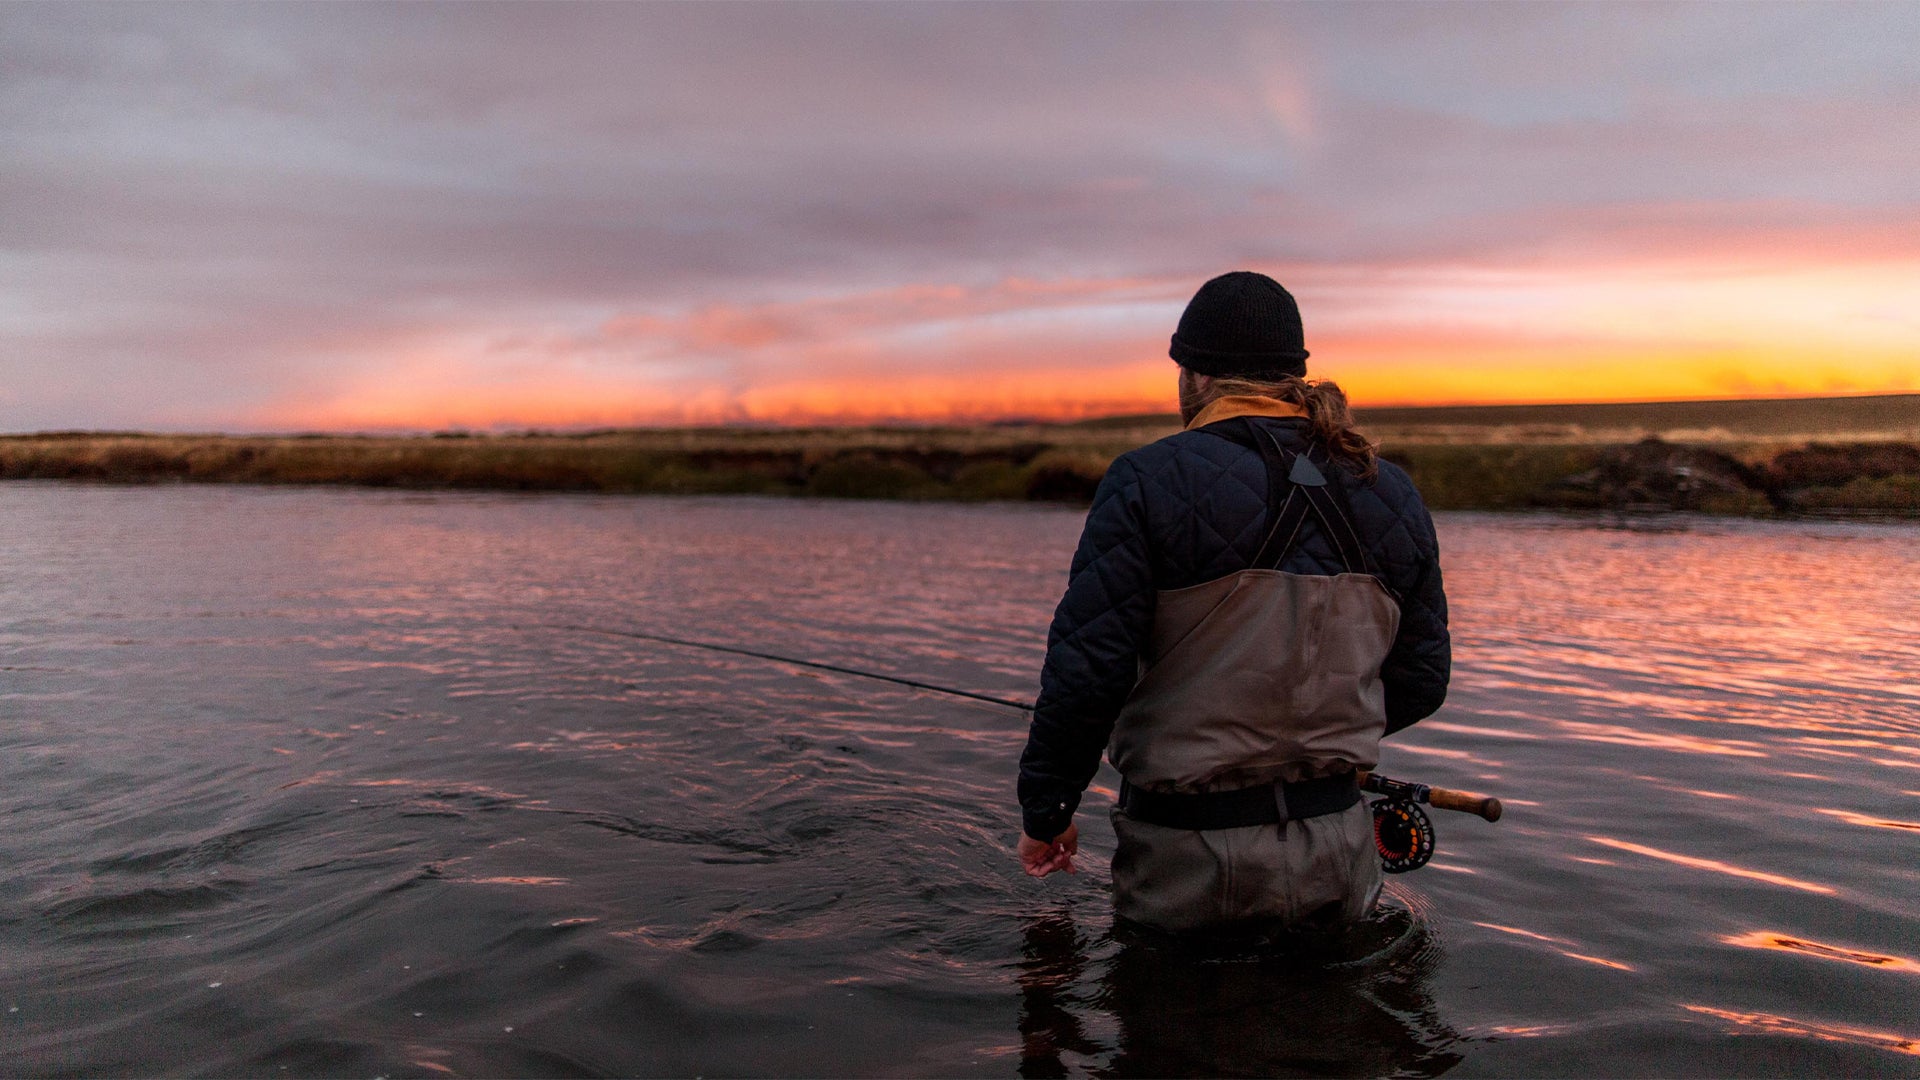 Rio Grande : The biggest brown trouts in the world